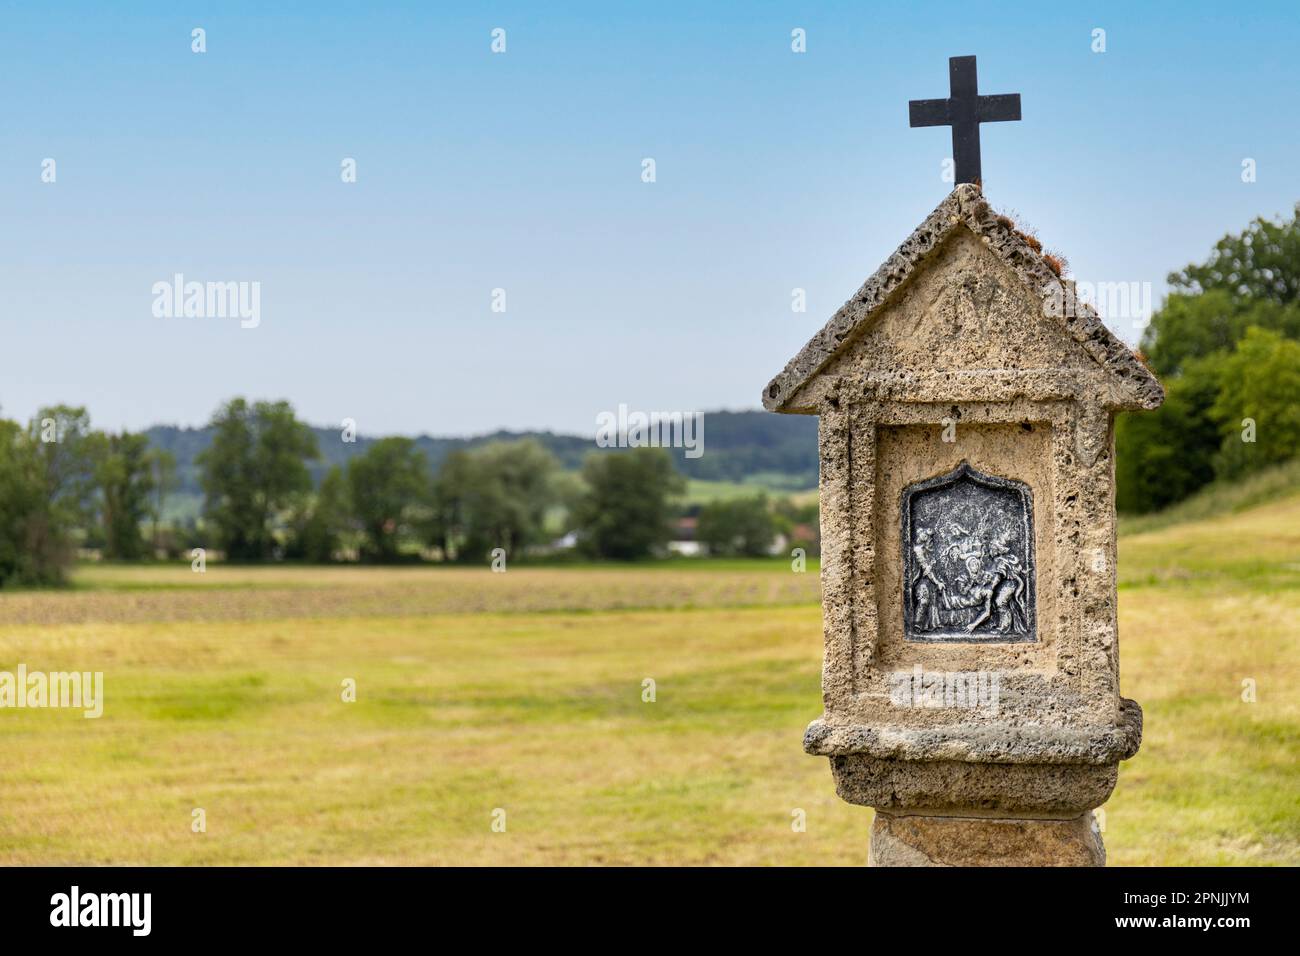 Katholischer Schrein mit religiösem Image und Kurzifix in ländlicher Landschaft im Inn-Tal, Bayern Stockfoto